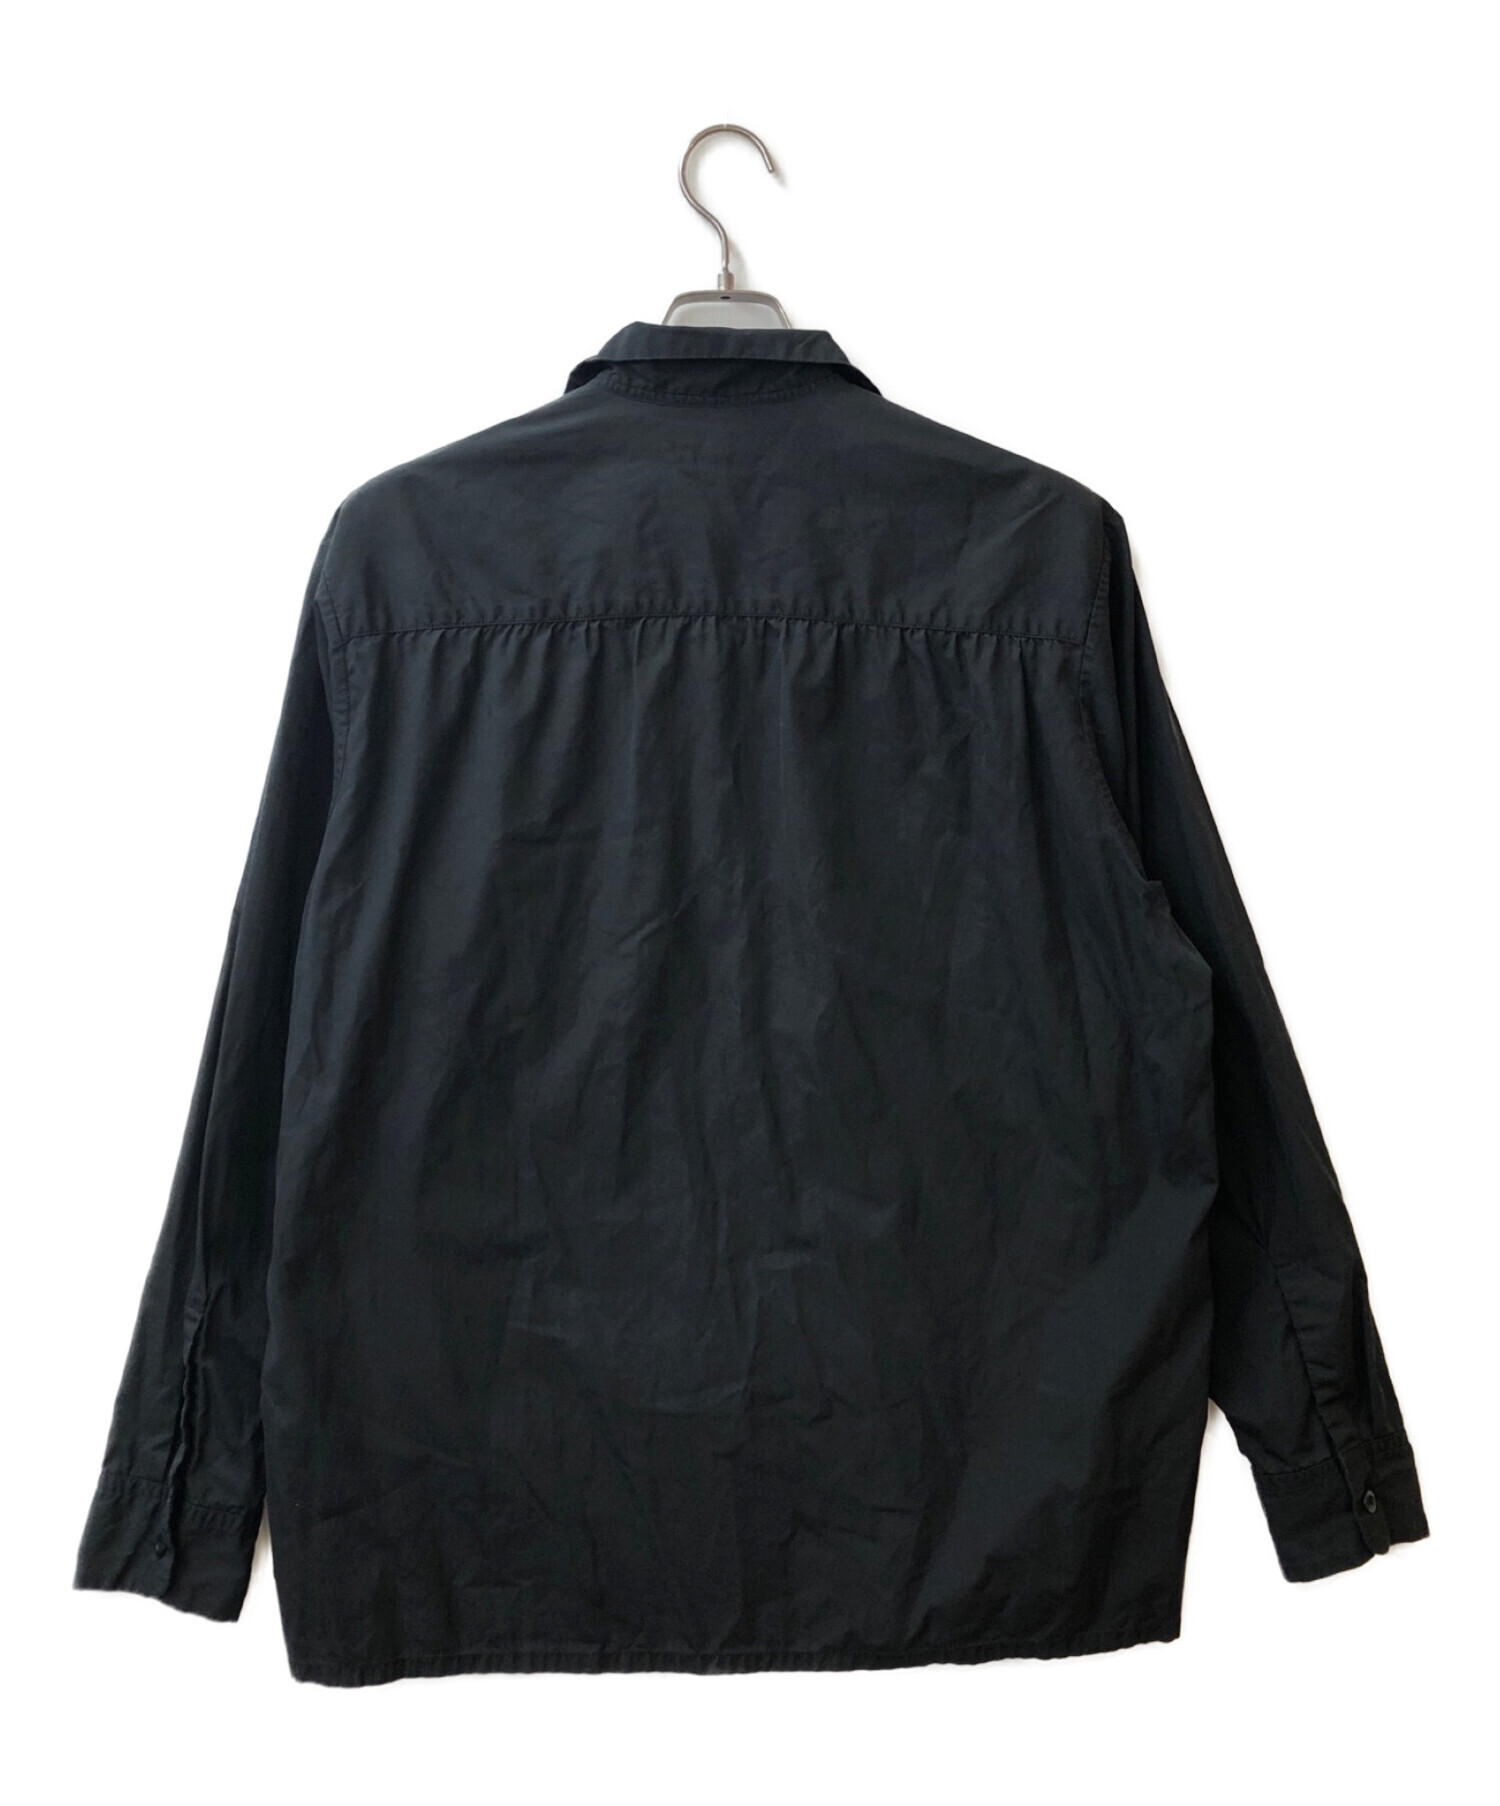 Yohji Yamamoto pour homme (ヨウジヤマモト プールオム) ダブルポケットブロードオープンカラーシャツ ブラック サイズ:M